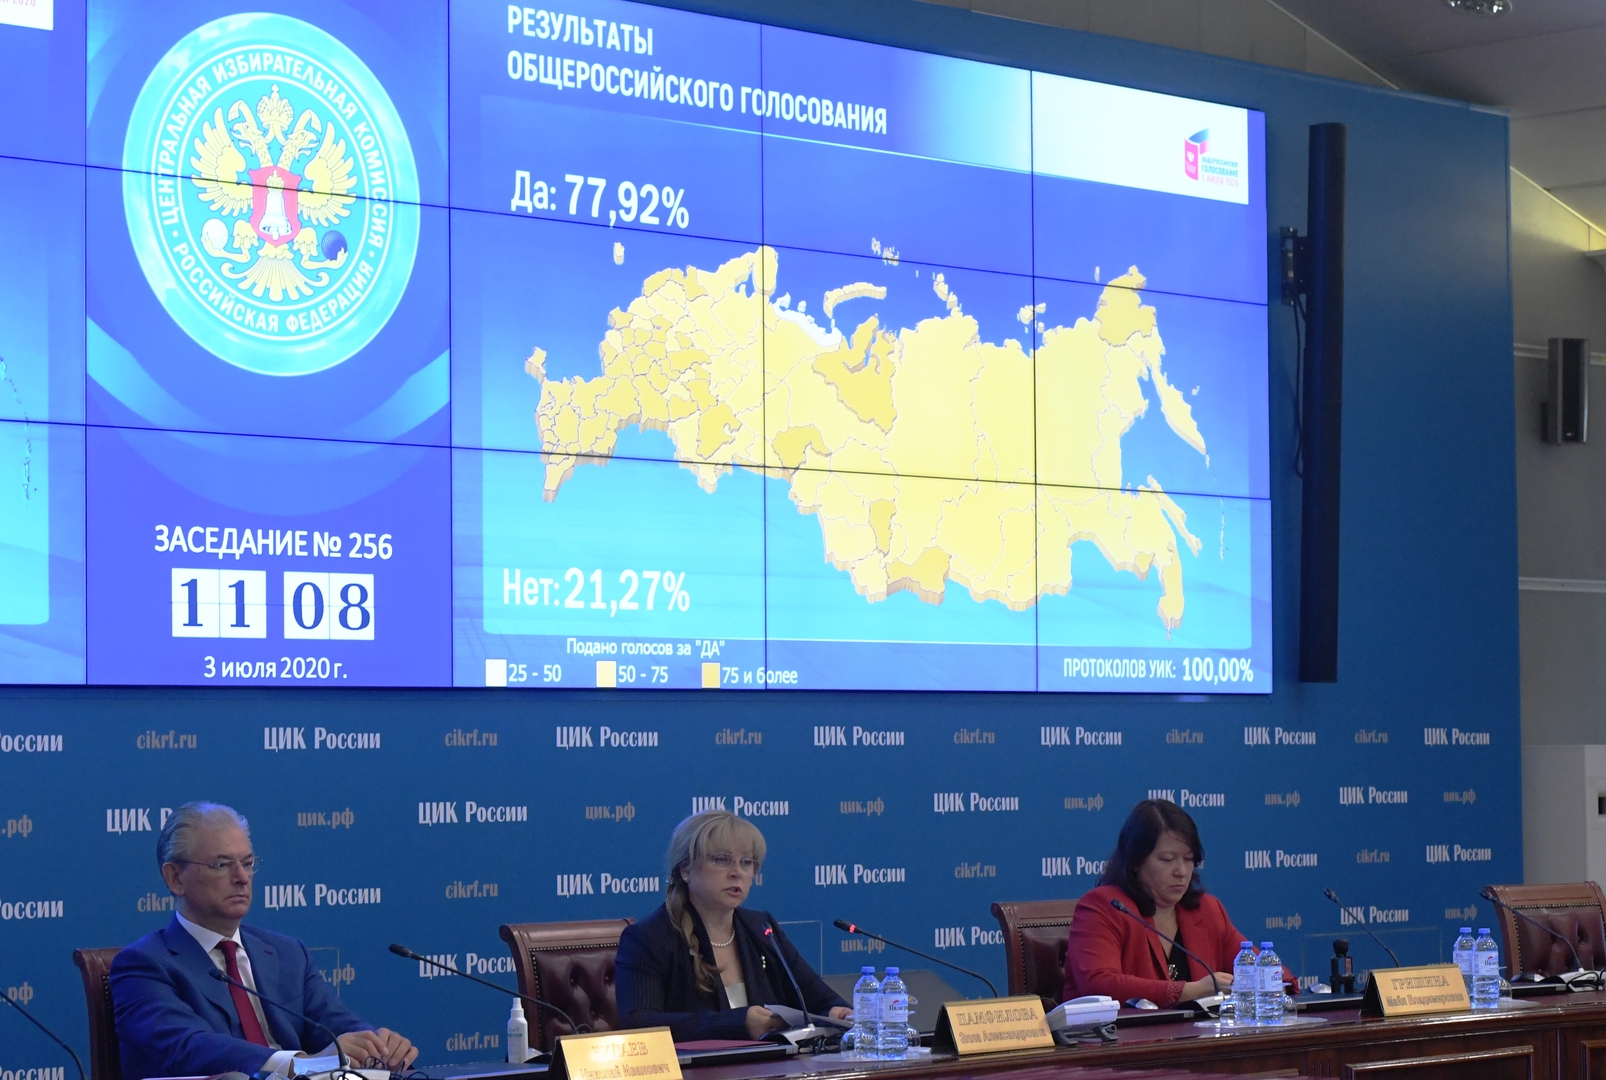 لجنة الانتخابات الروسية ترجح حدوث محاولات أجنبية للتدخل في انتخابات الدوما